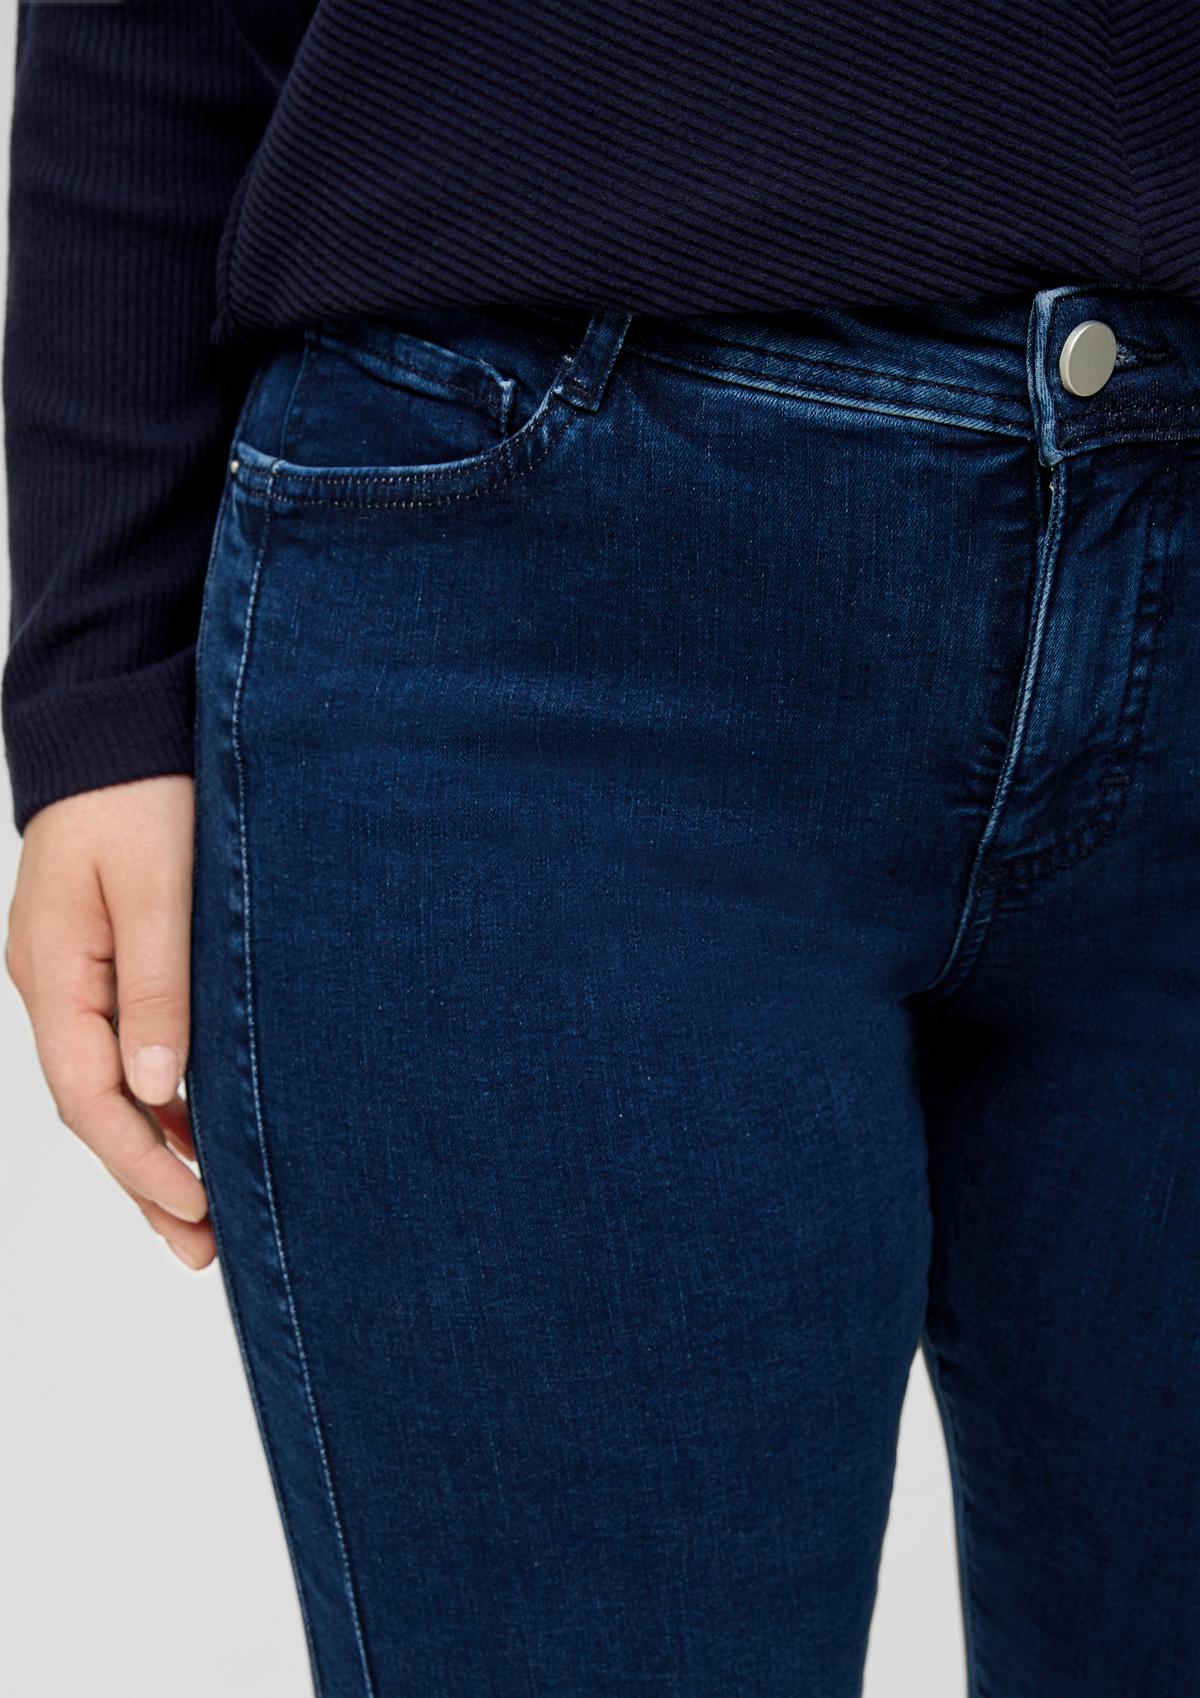 s.Oliver Jeans hlače/kroj Curvy Fit/Mid Rise/ravne hlačnice